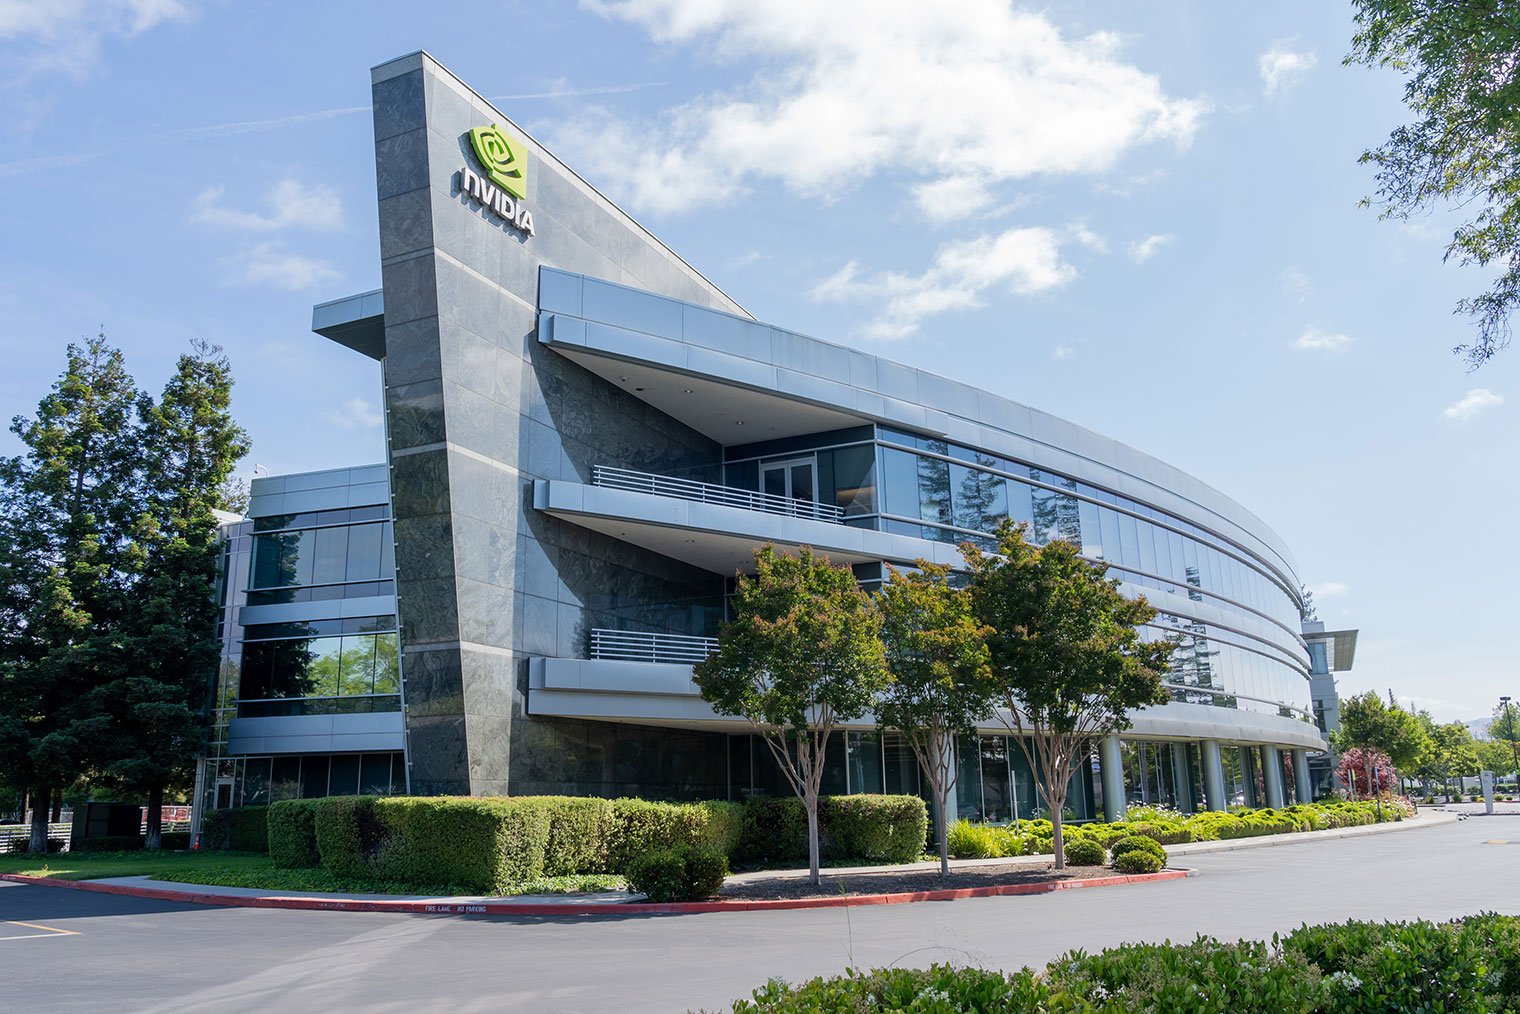 Штаб⁠-⁠квартира Nvidia в Калифорнии, США. Фотография: JHVEPhoto / iStock